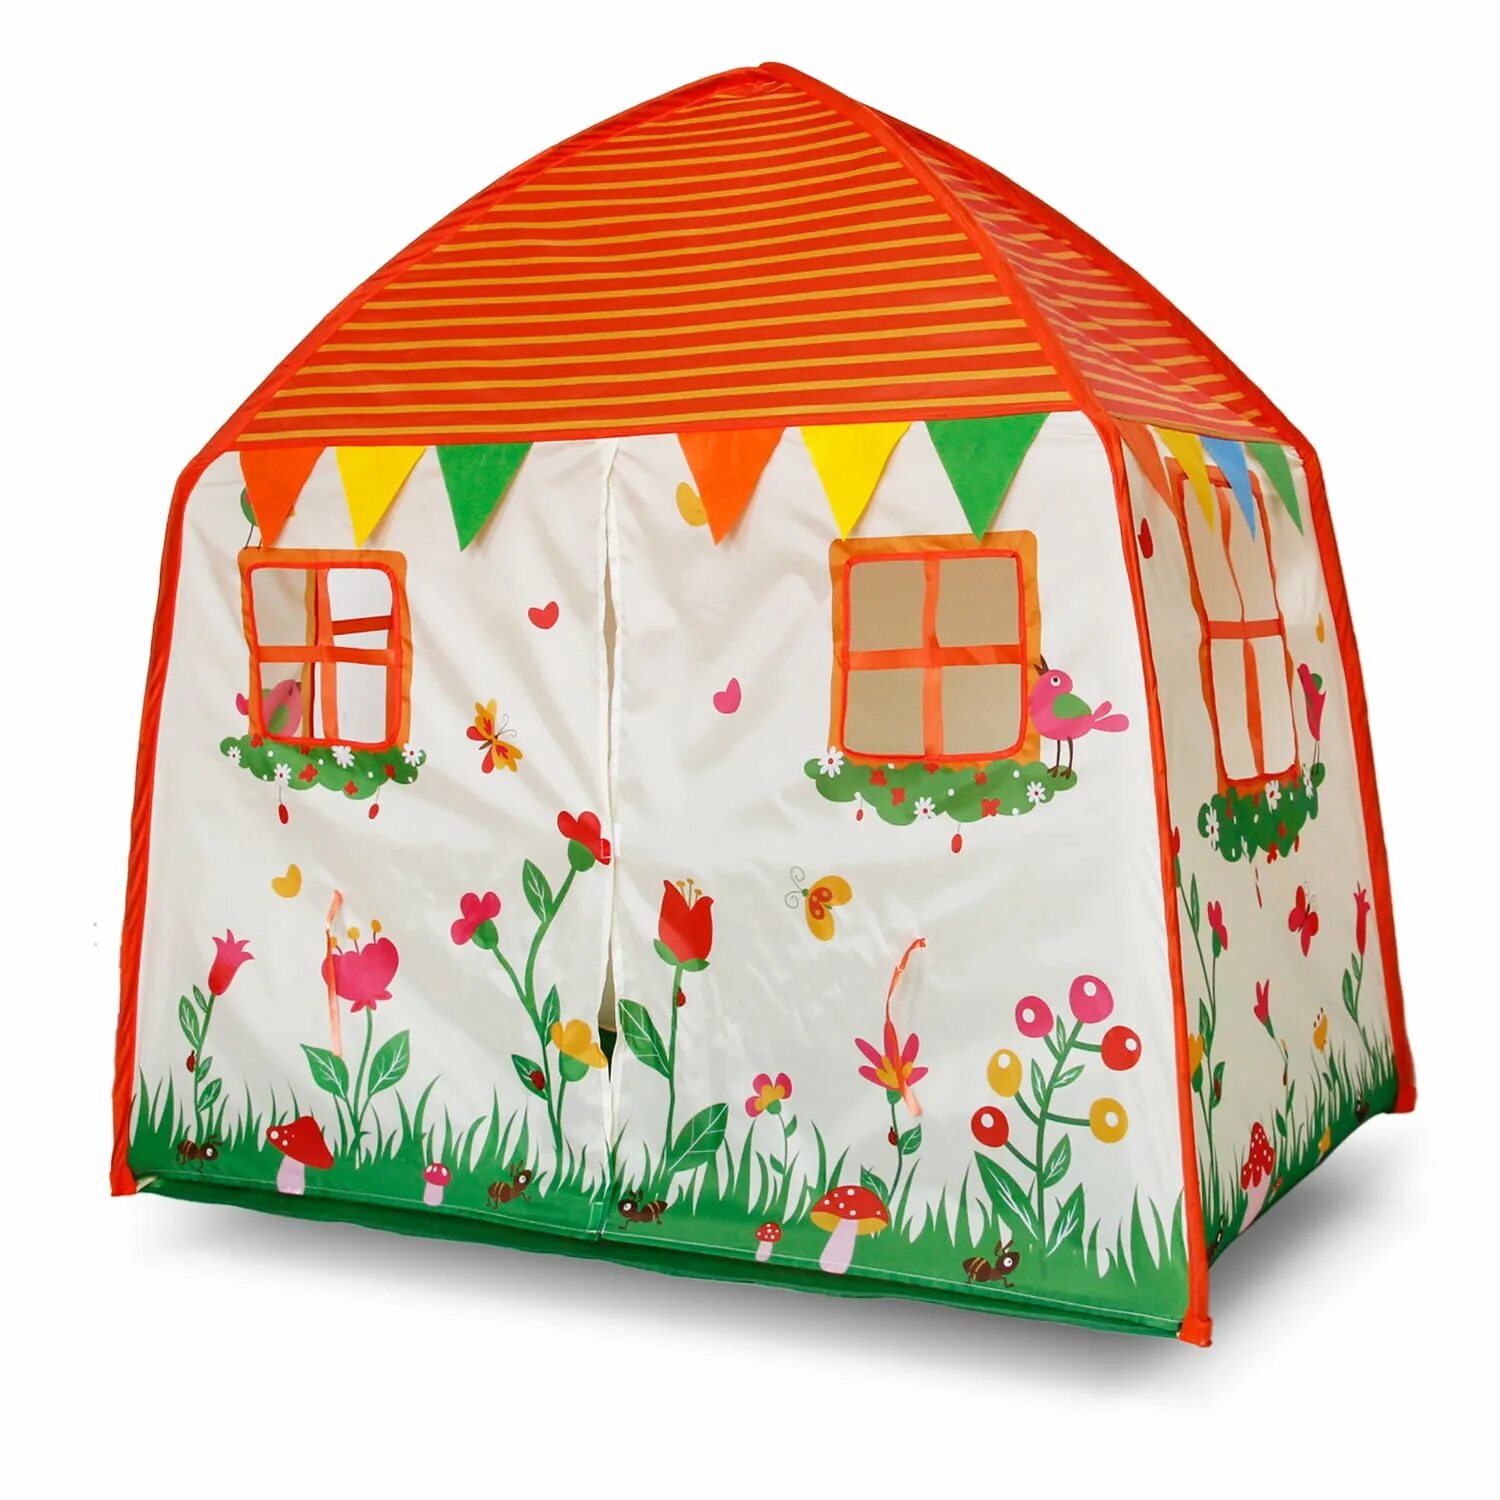 Купить палатку домик. Домик палатка yh5805. Детская Полтака палатка House Tent 135 95 120. Tenda Iglo familiar палатка игровая. Детские палатки домики игровые.